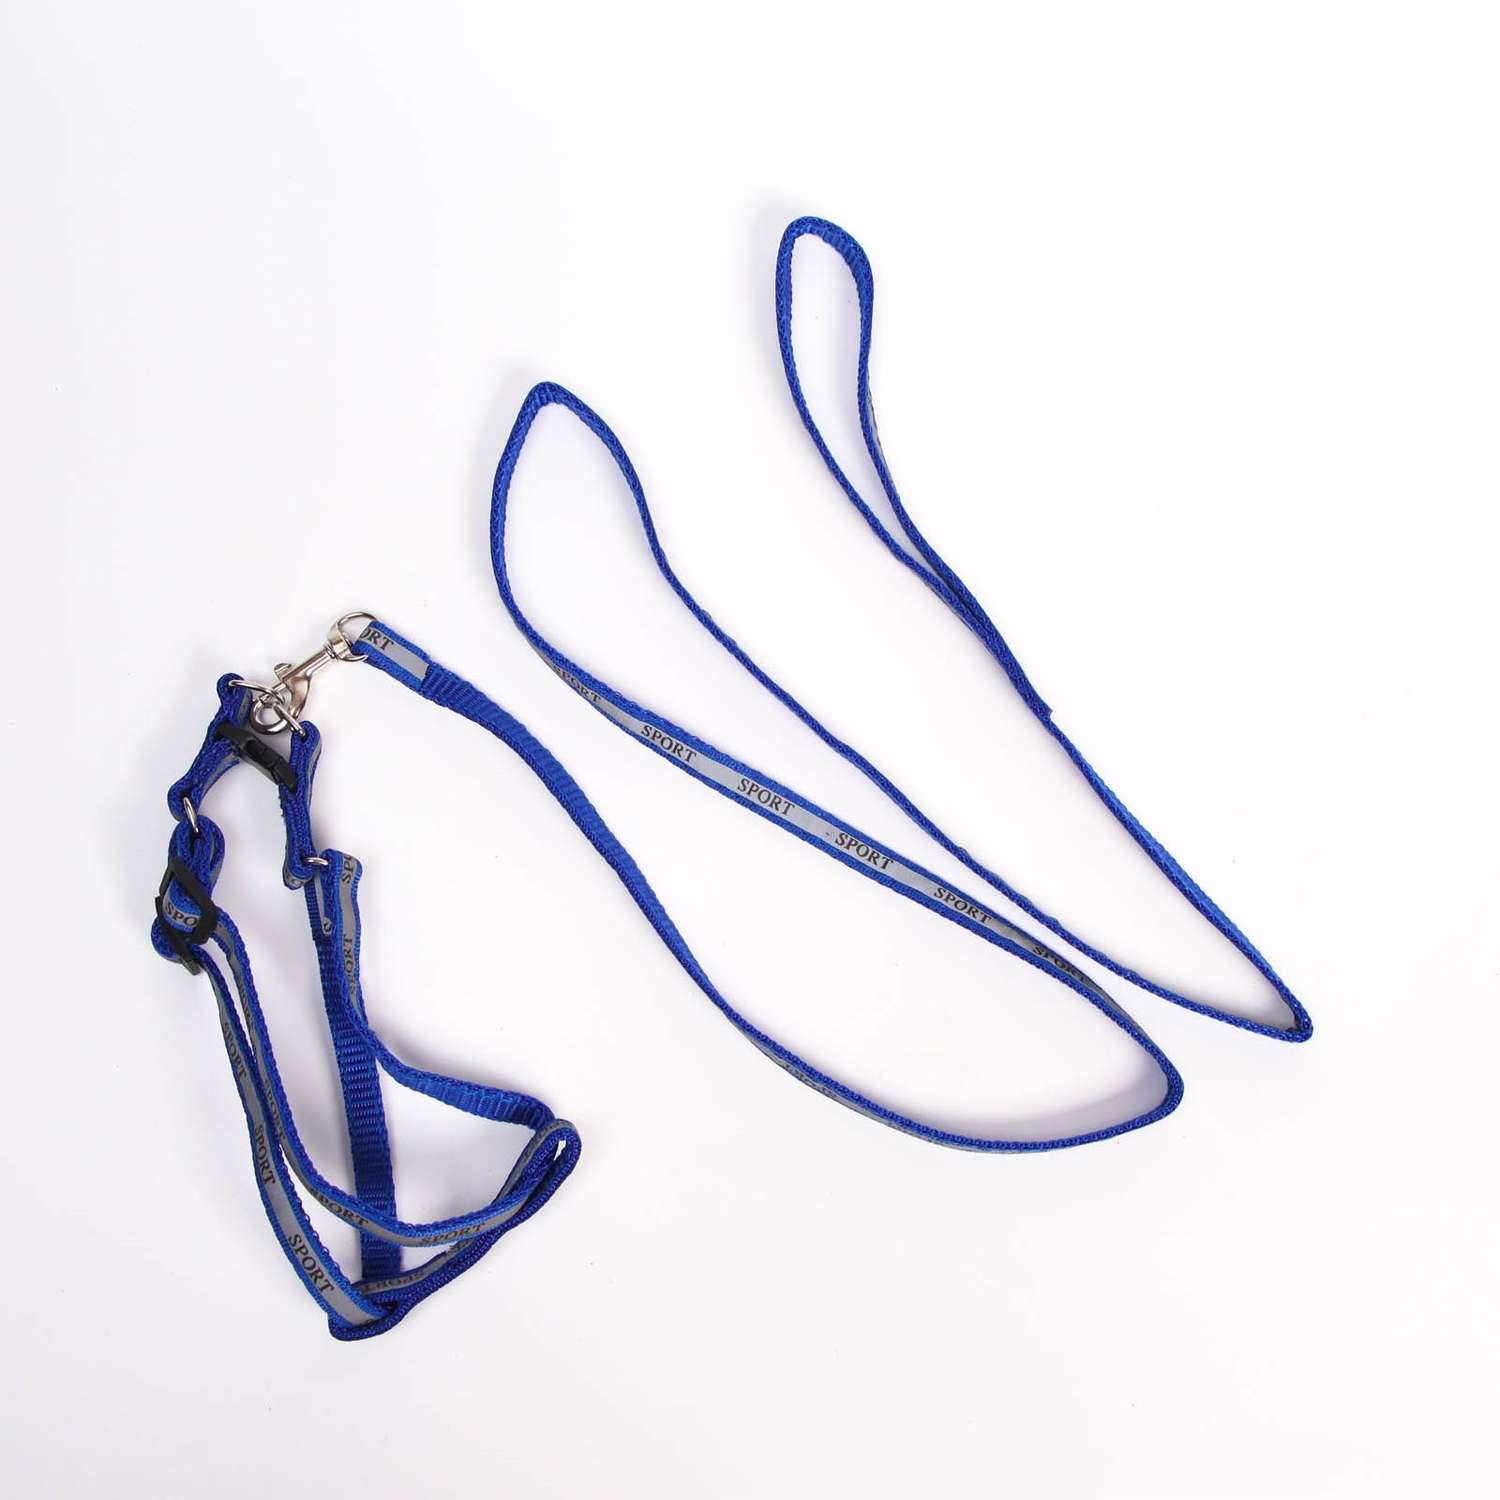 Комплект Пижон Спорт светоотражающий ширина 1 см поводок 1.2 м шлейка 23-35 см синий - фото 1